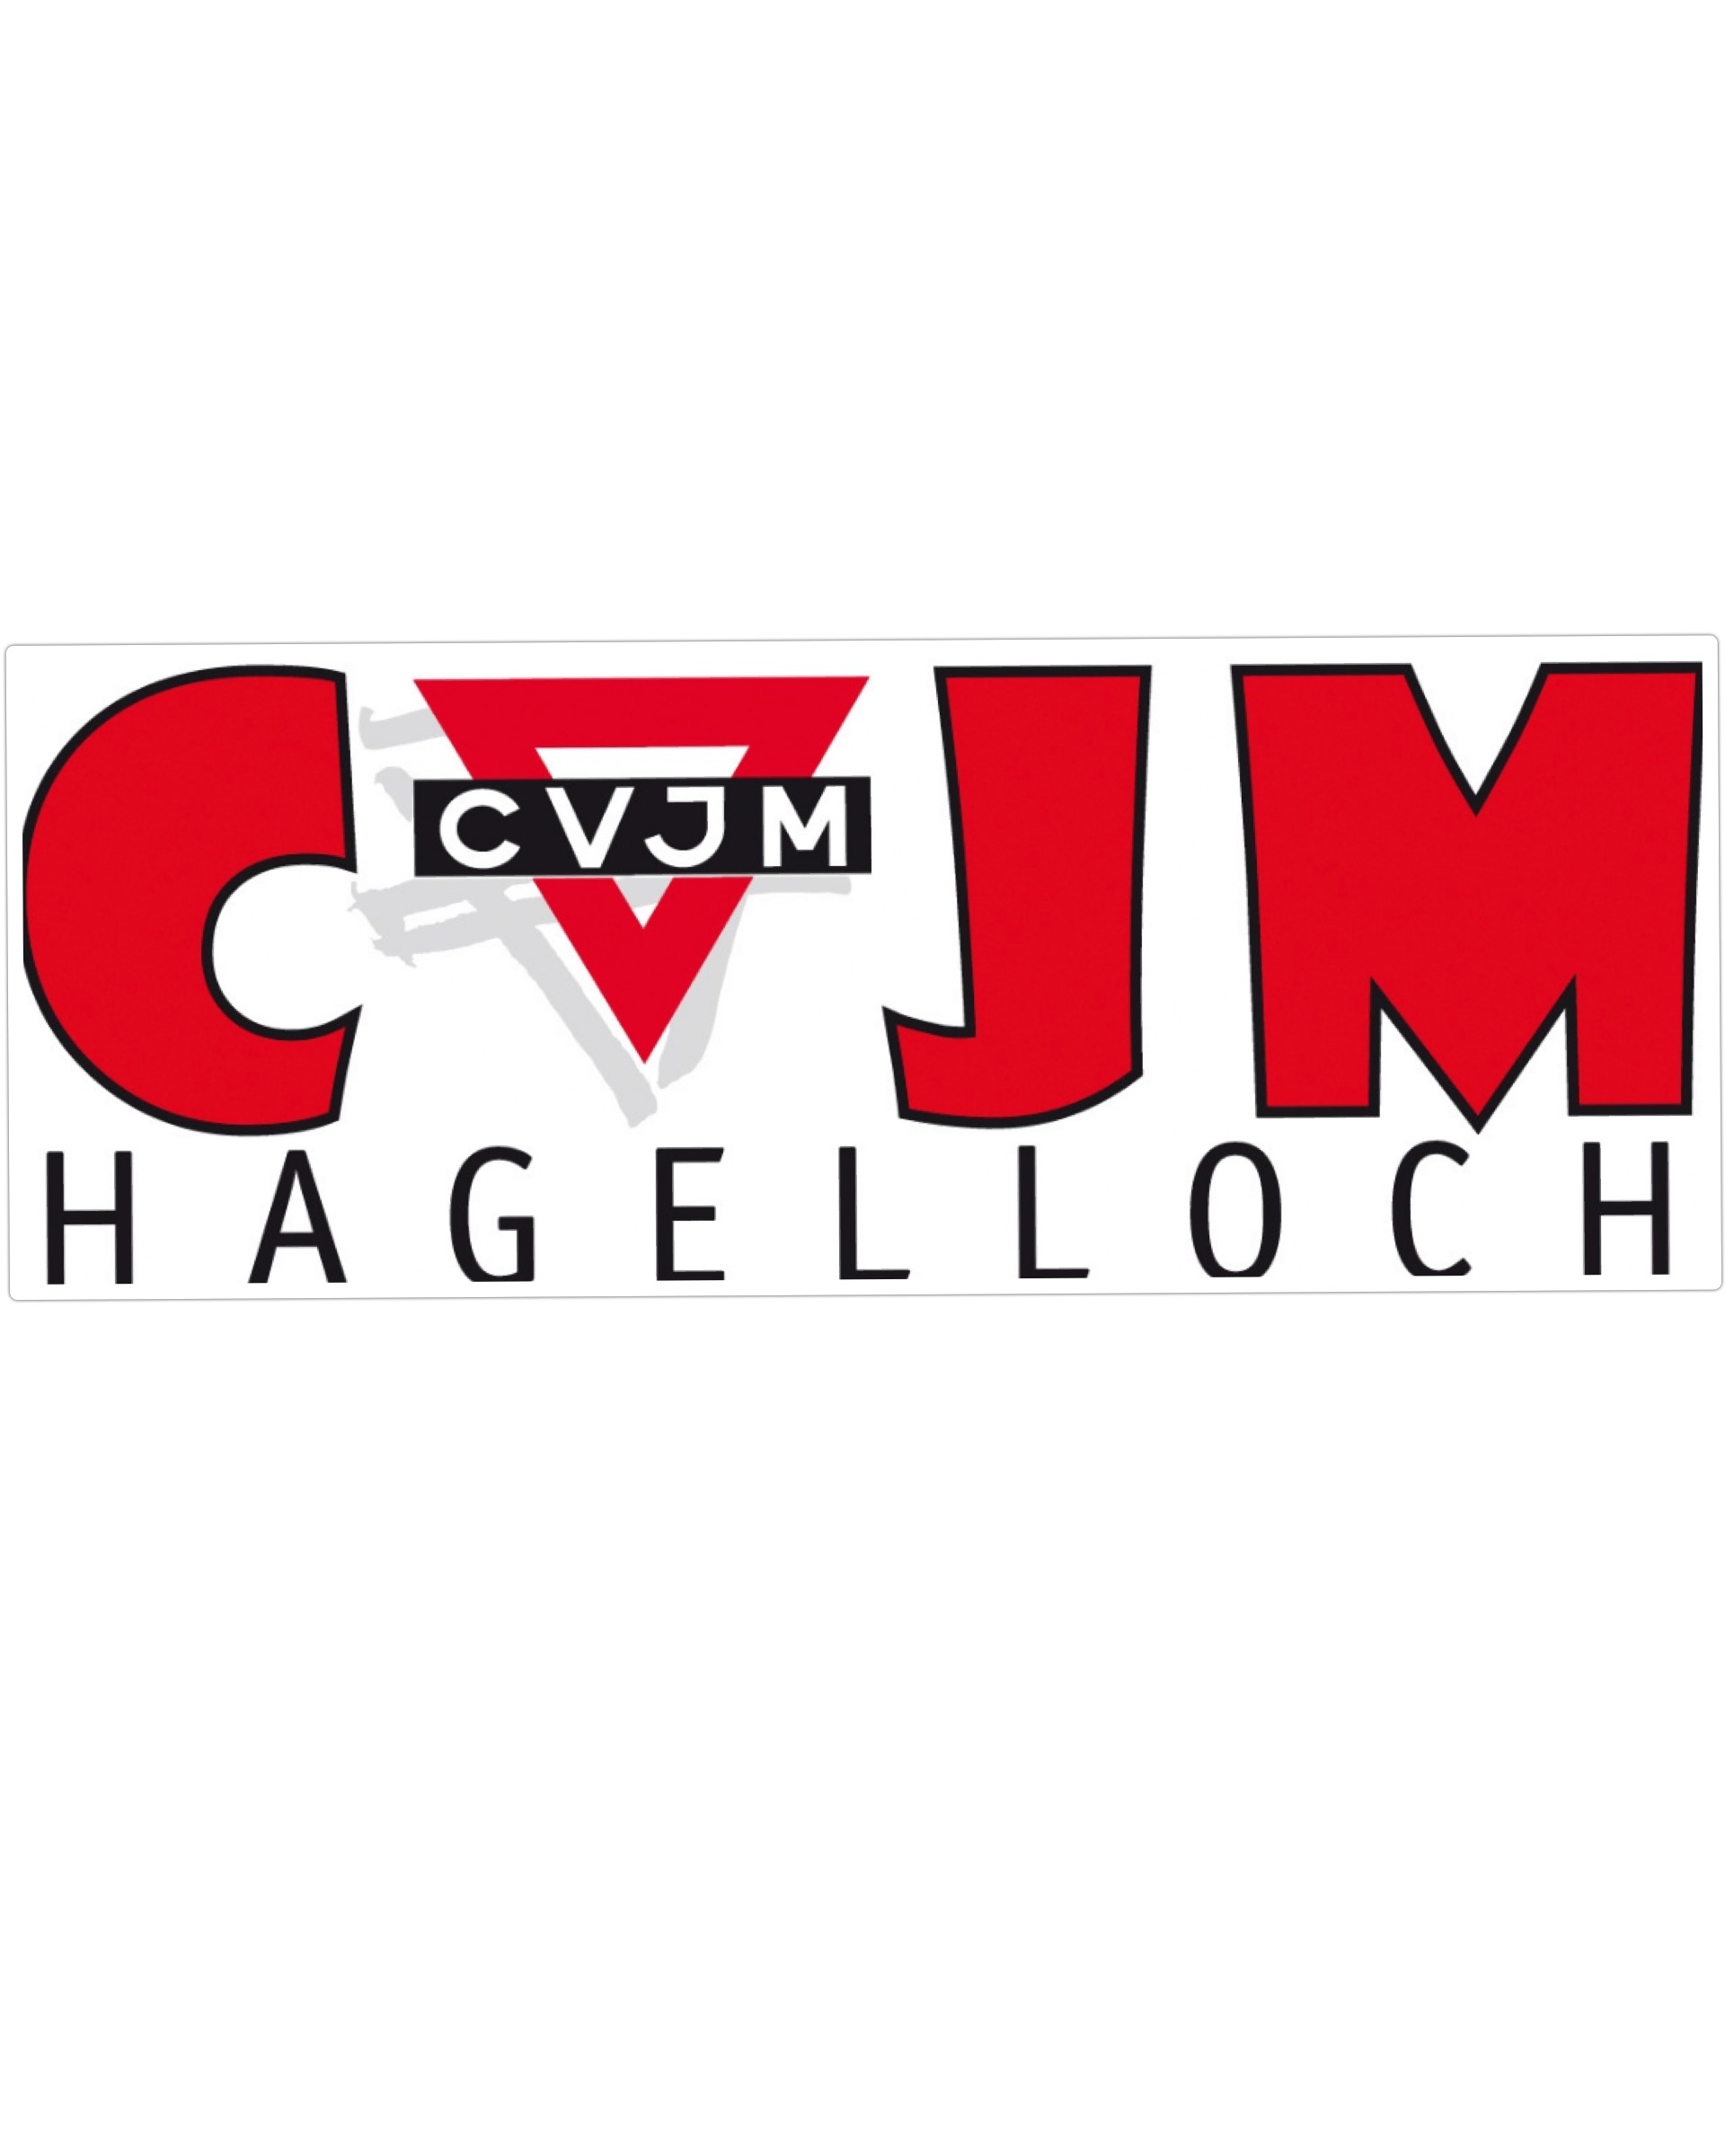 CVJM Hagelloch